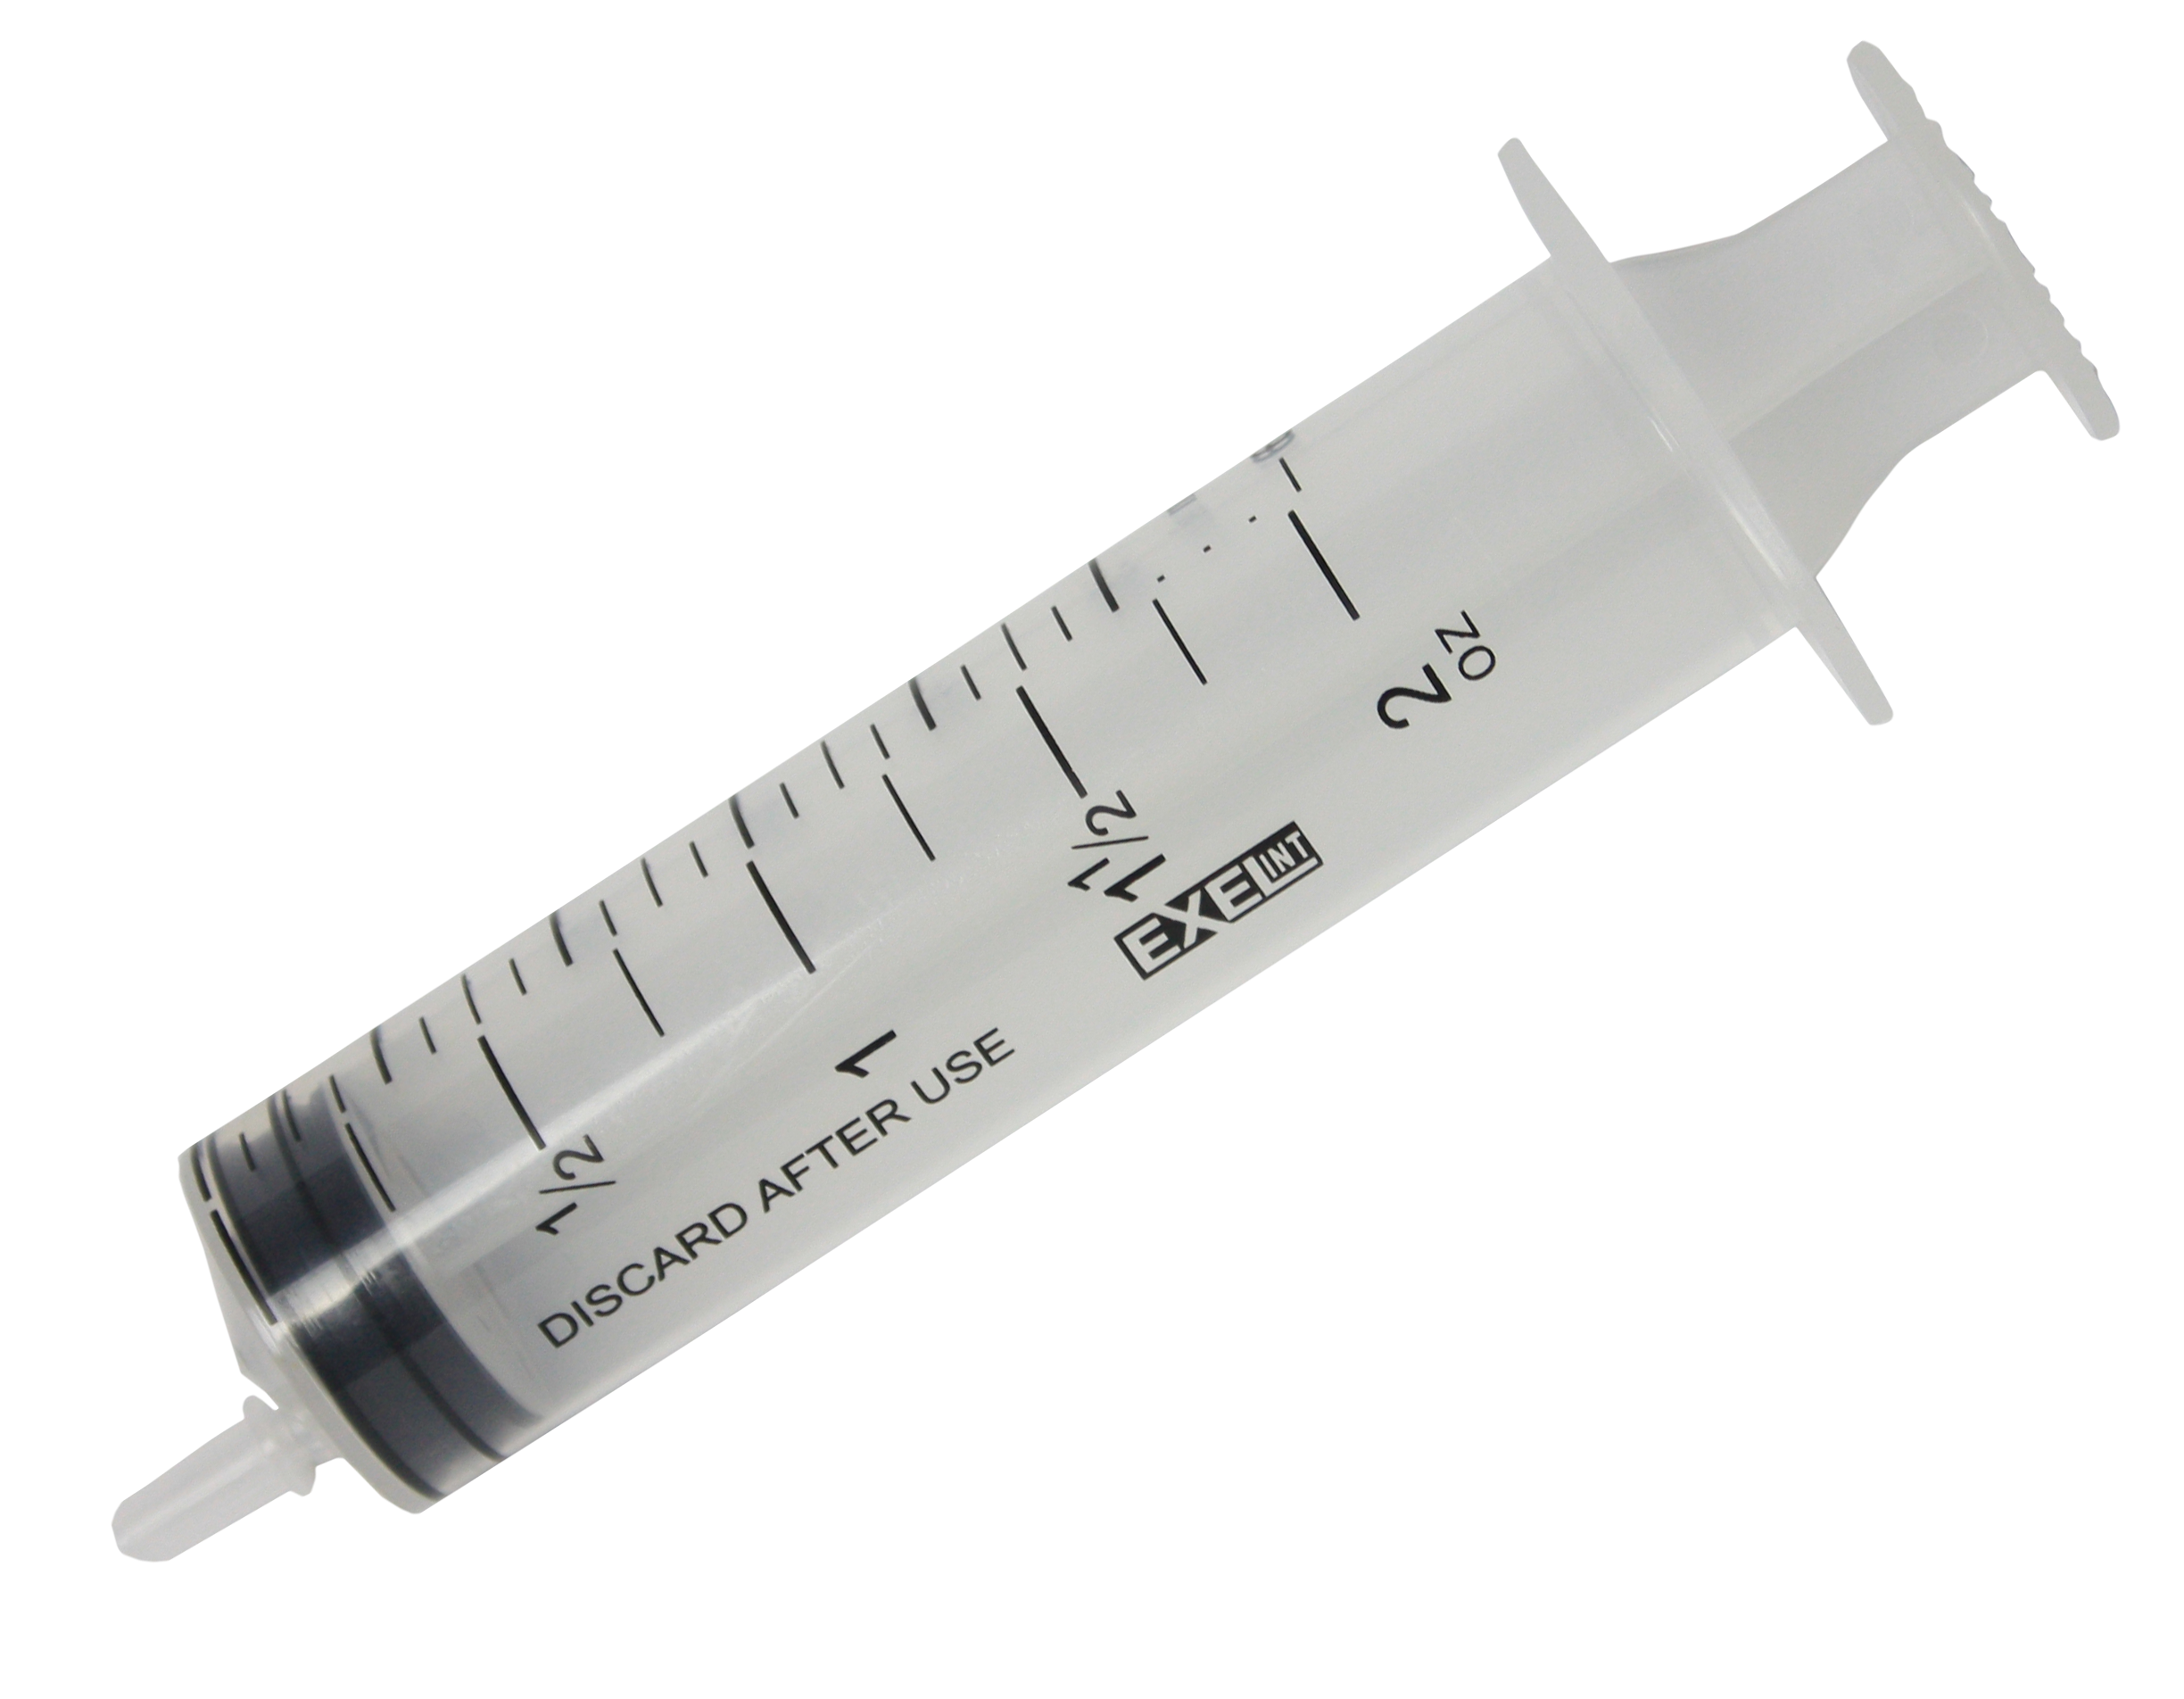 Syringe Png - Medical Syringe, Transparent background PNG HD thumbnail